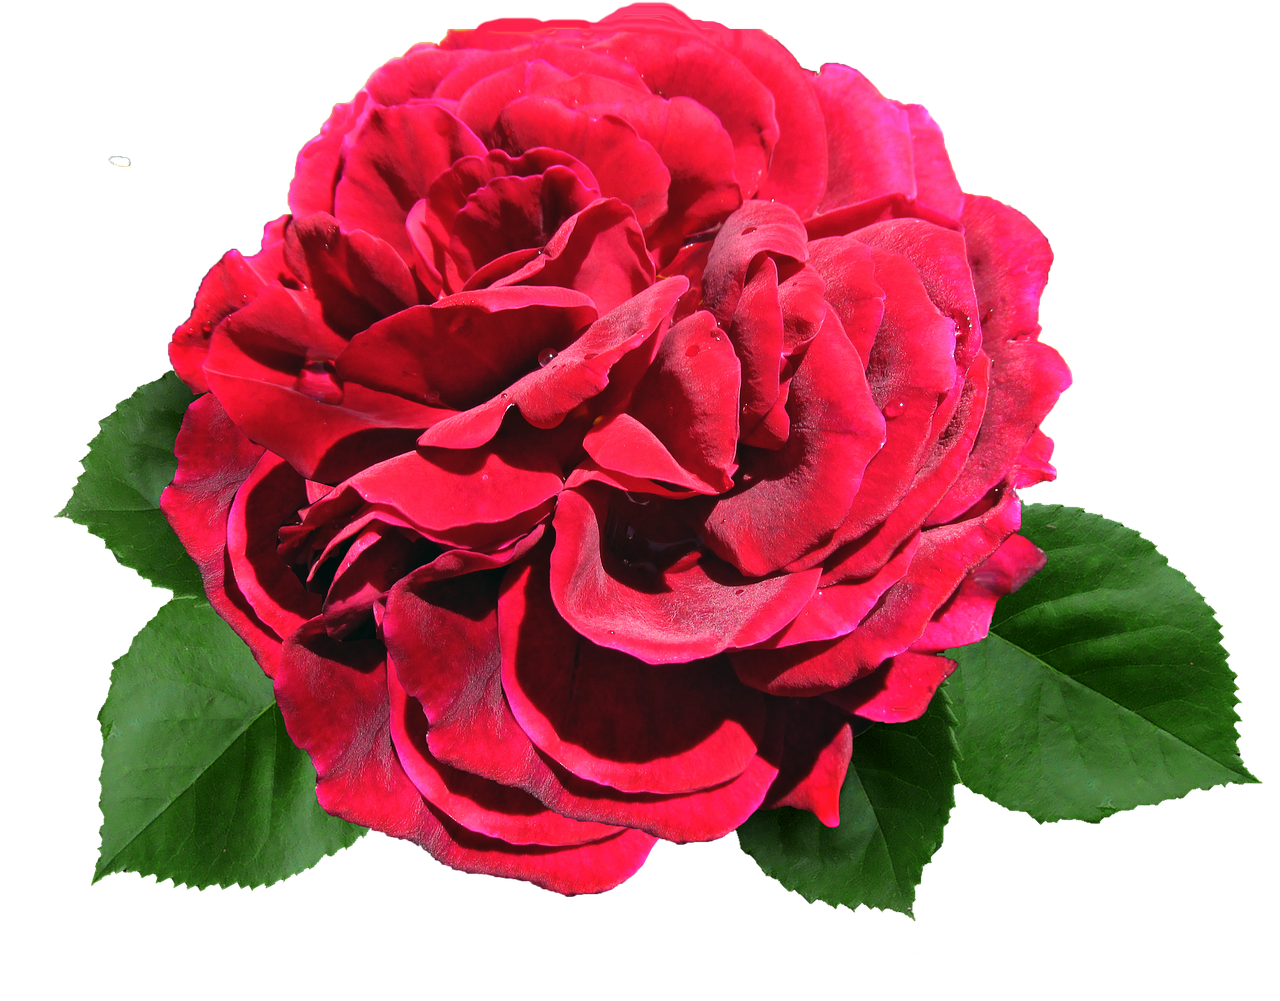 rose red david austin free photo